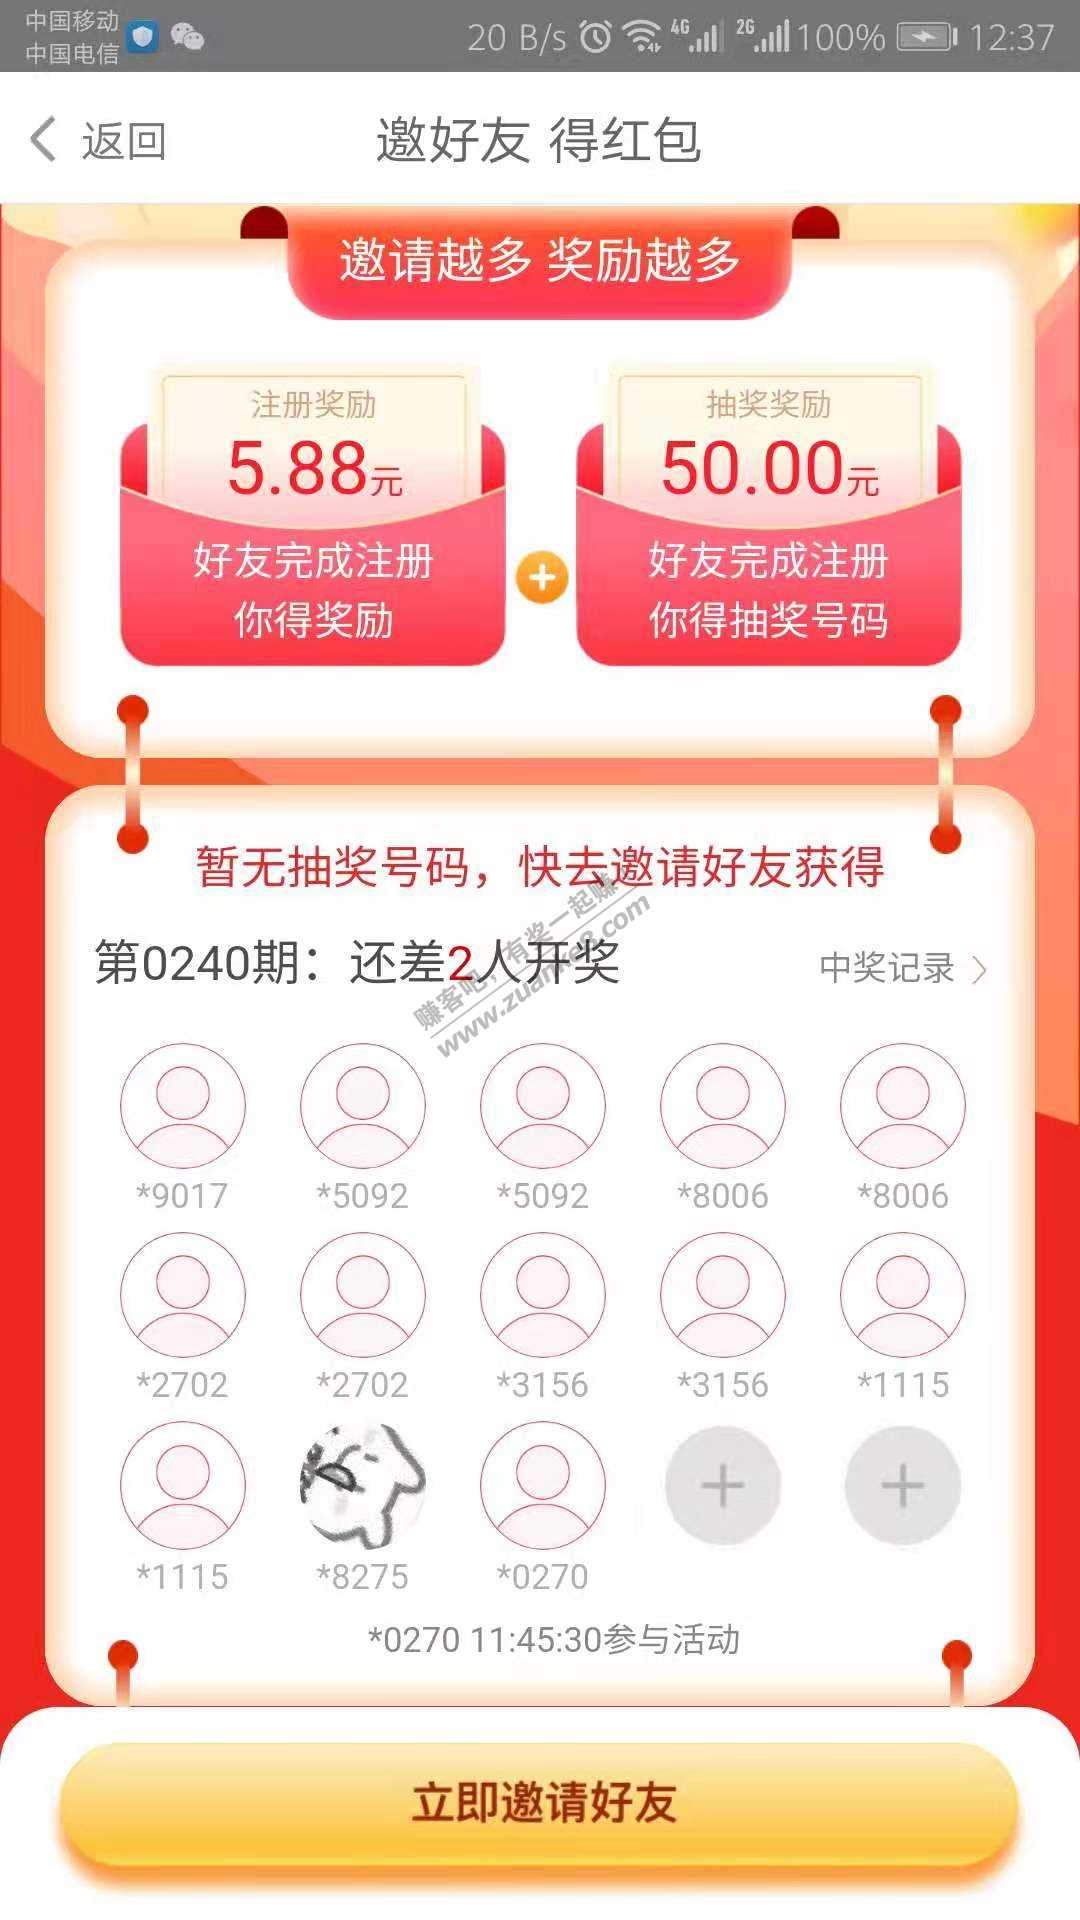 大毛-至少29.4元-运气好+50-中奖率挺高-惠小助(52huixz.com)